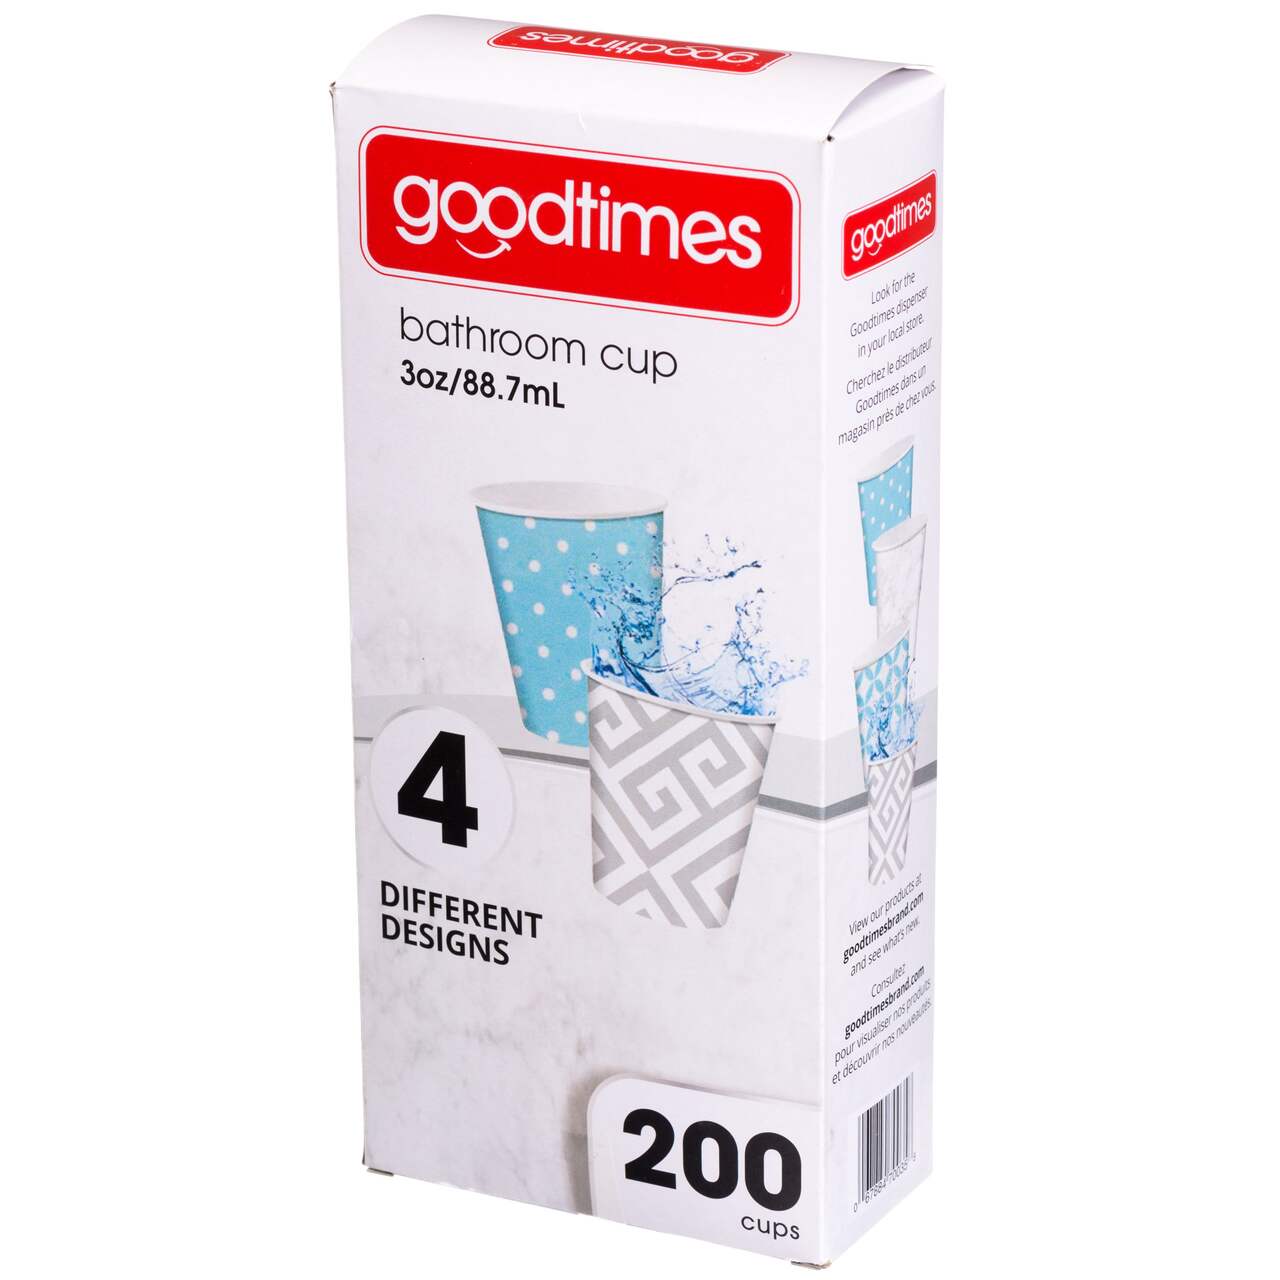 Gobelets en papier pour la salle de bain Goodtimes, 88 mL, paq. 200